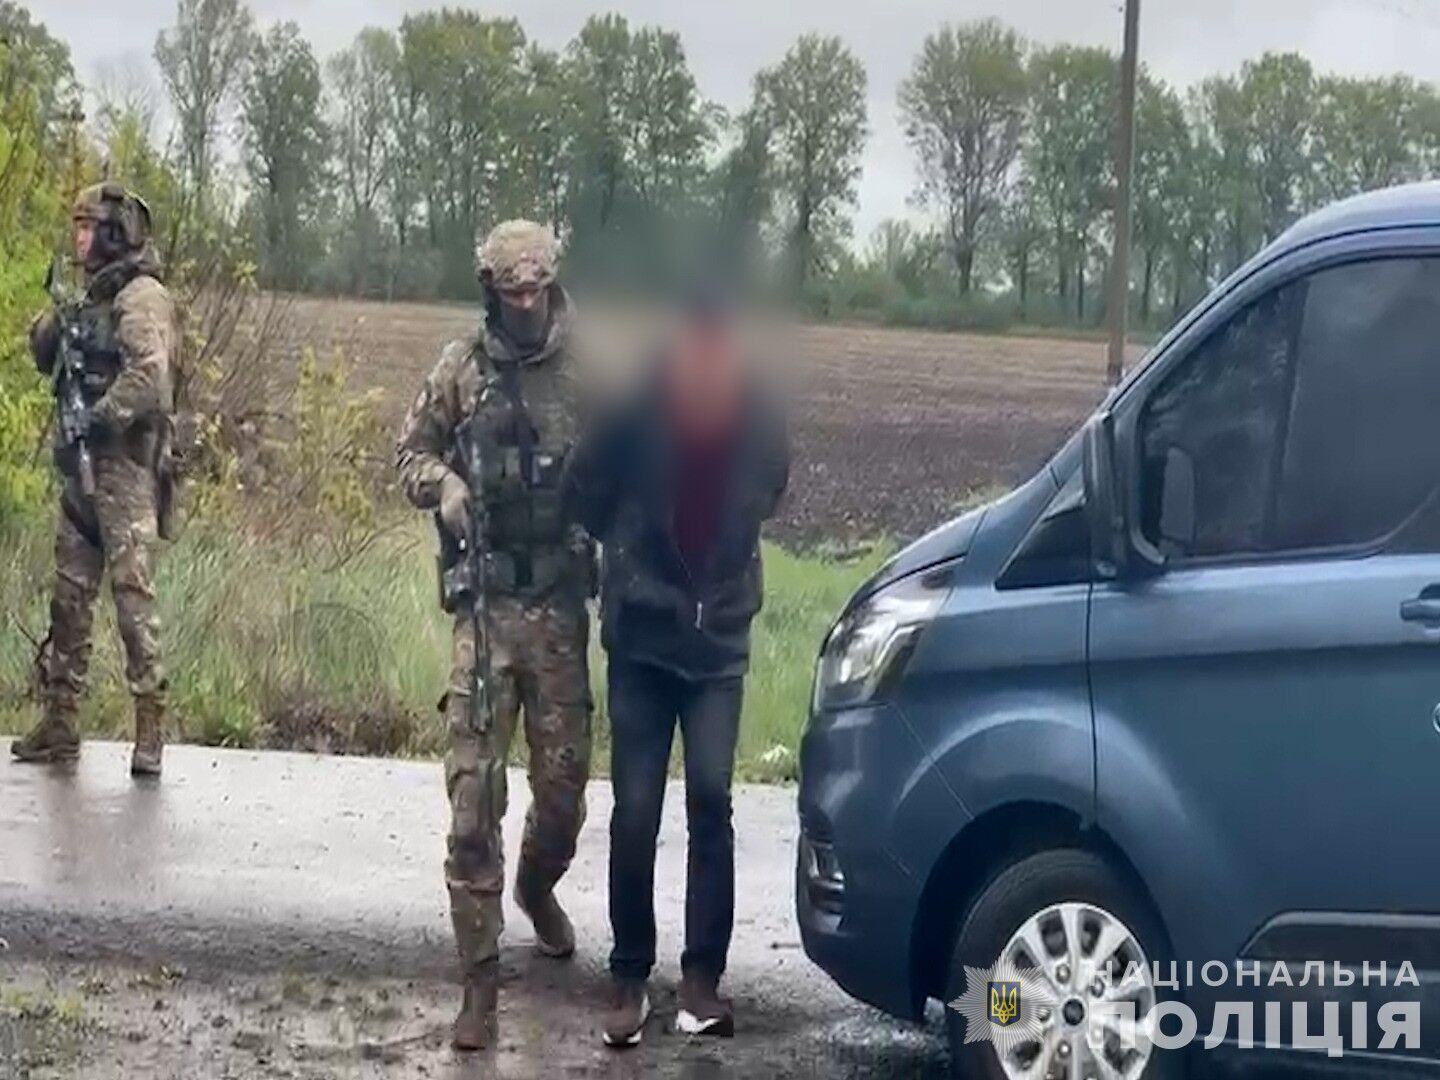 "Орудие убийства изъято": в МВД объяснили, когда изберут меру пресечения напавшим на полицейских в Винницкой области